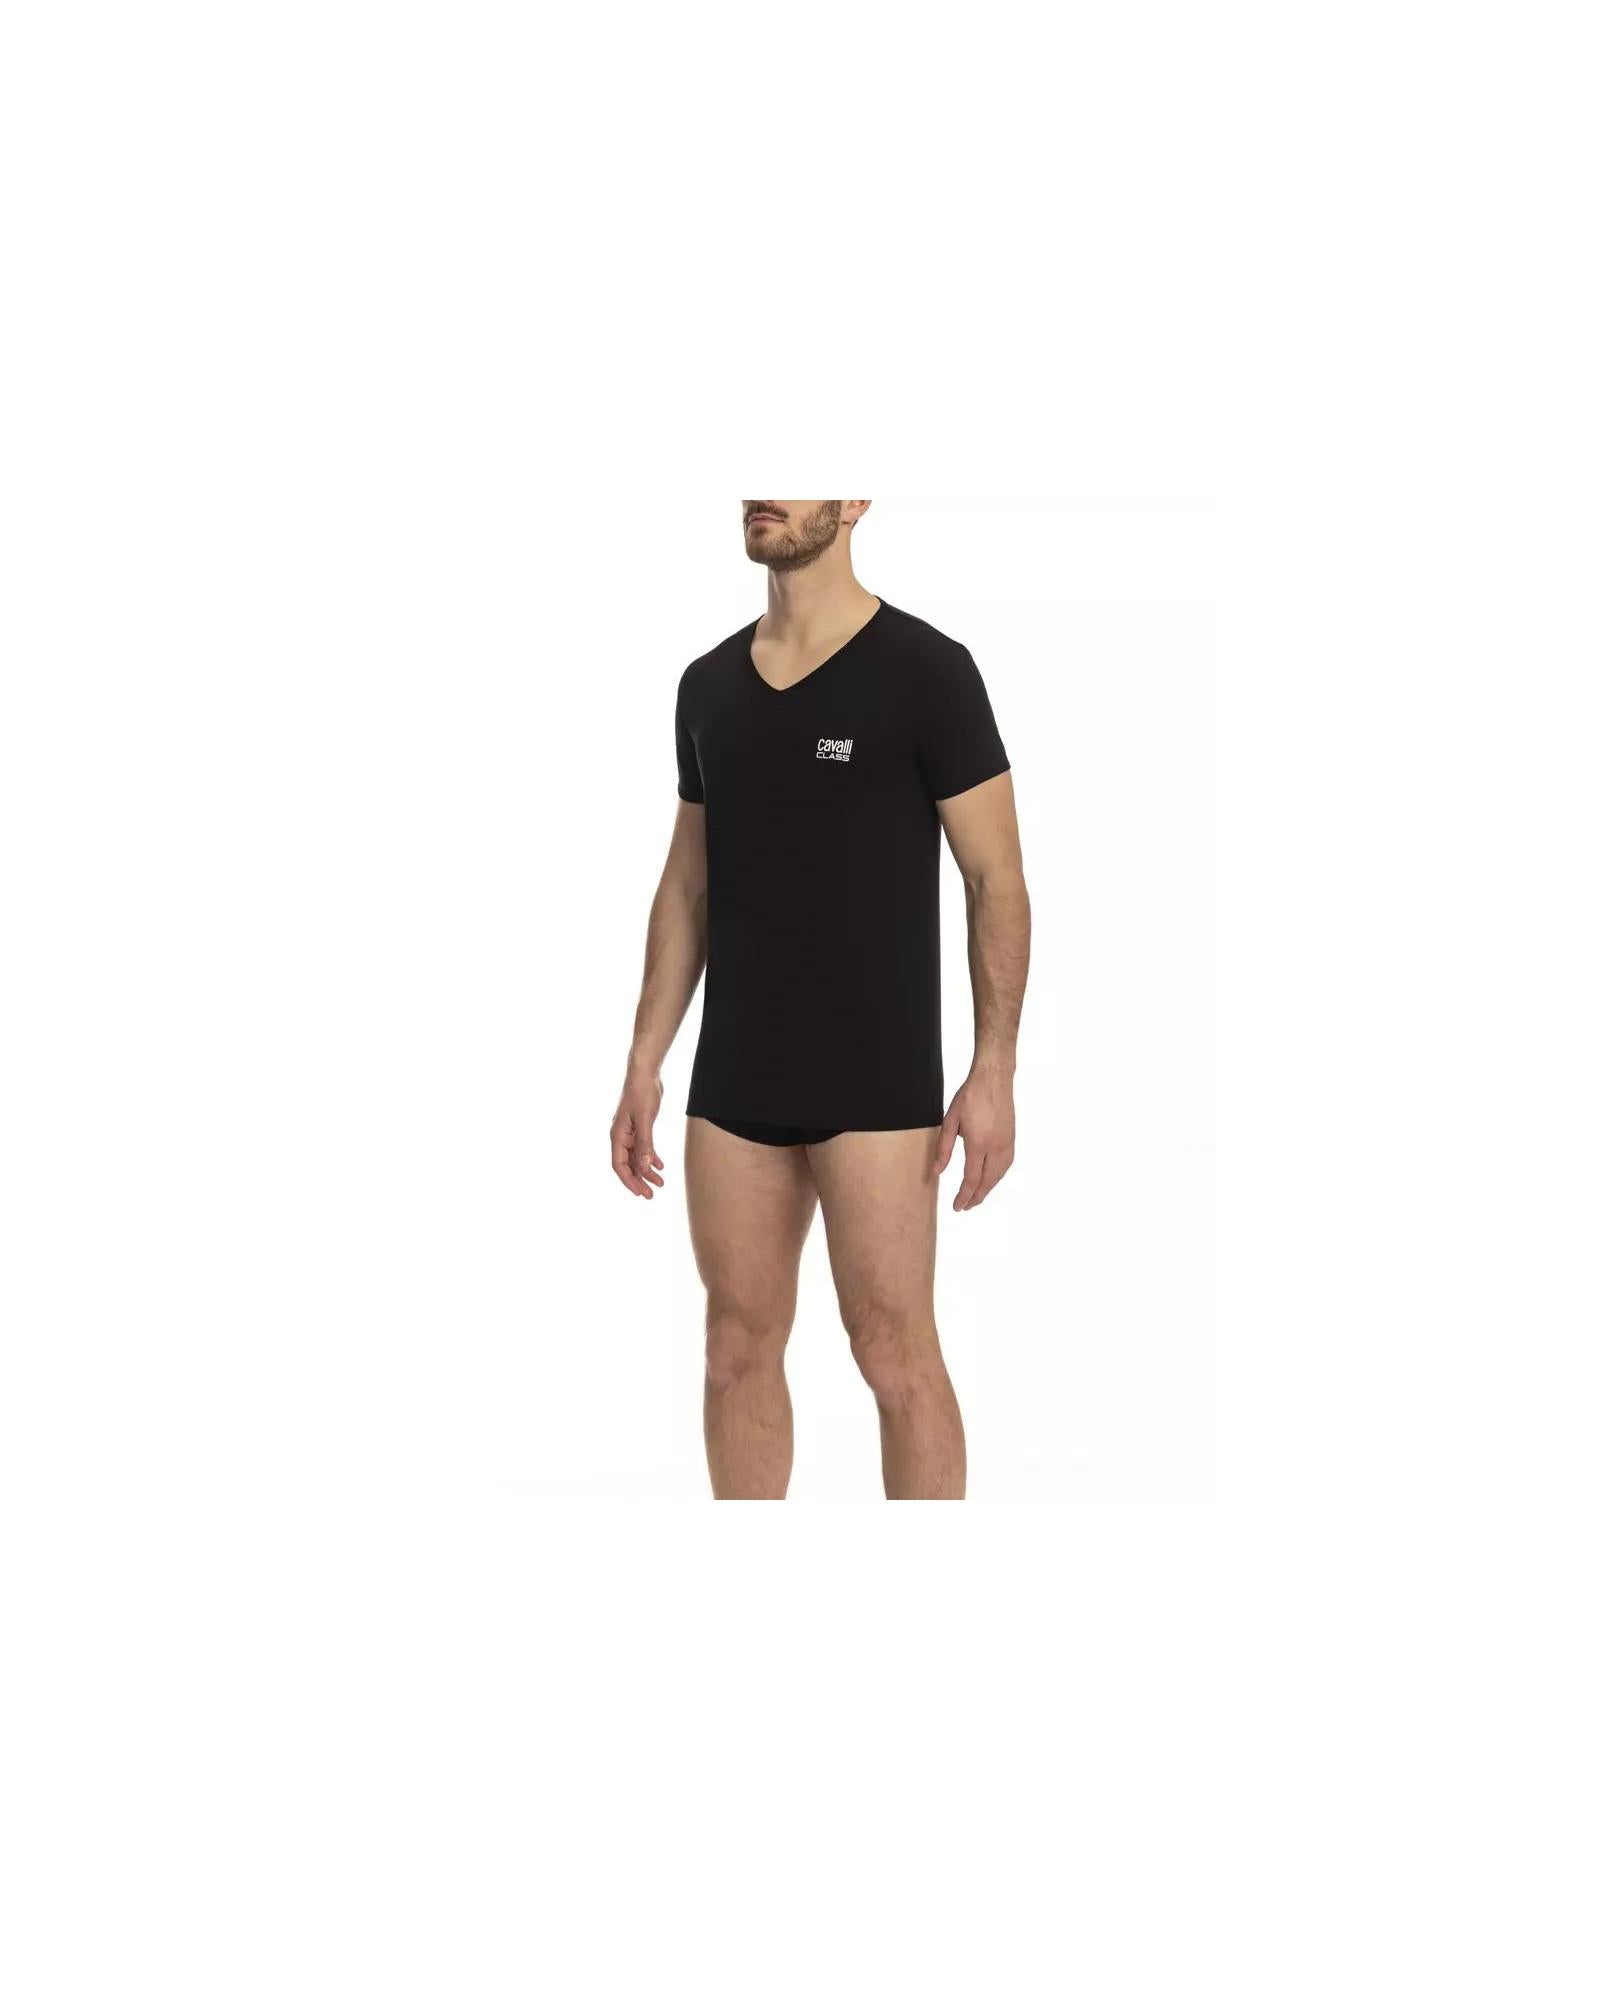 Men's Black Cotton T-Shirt - XL